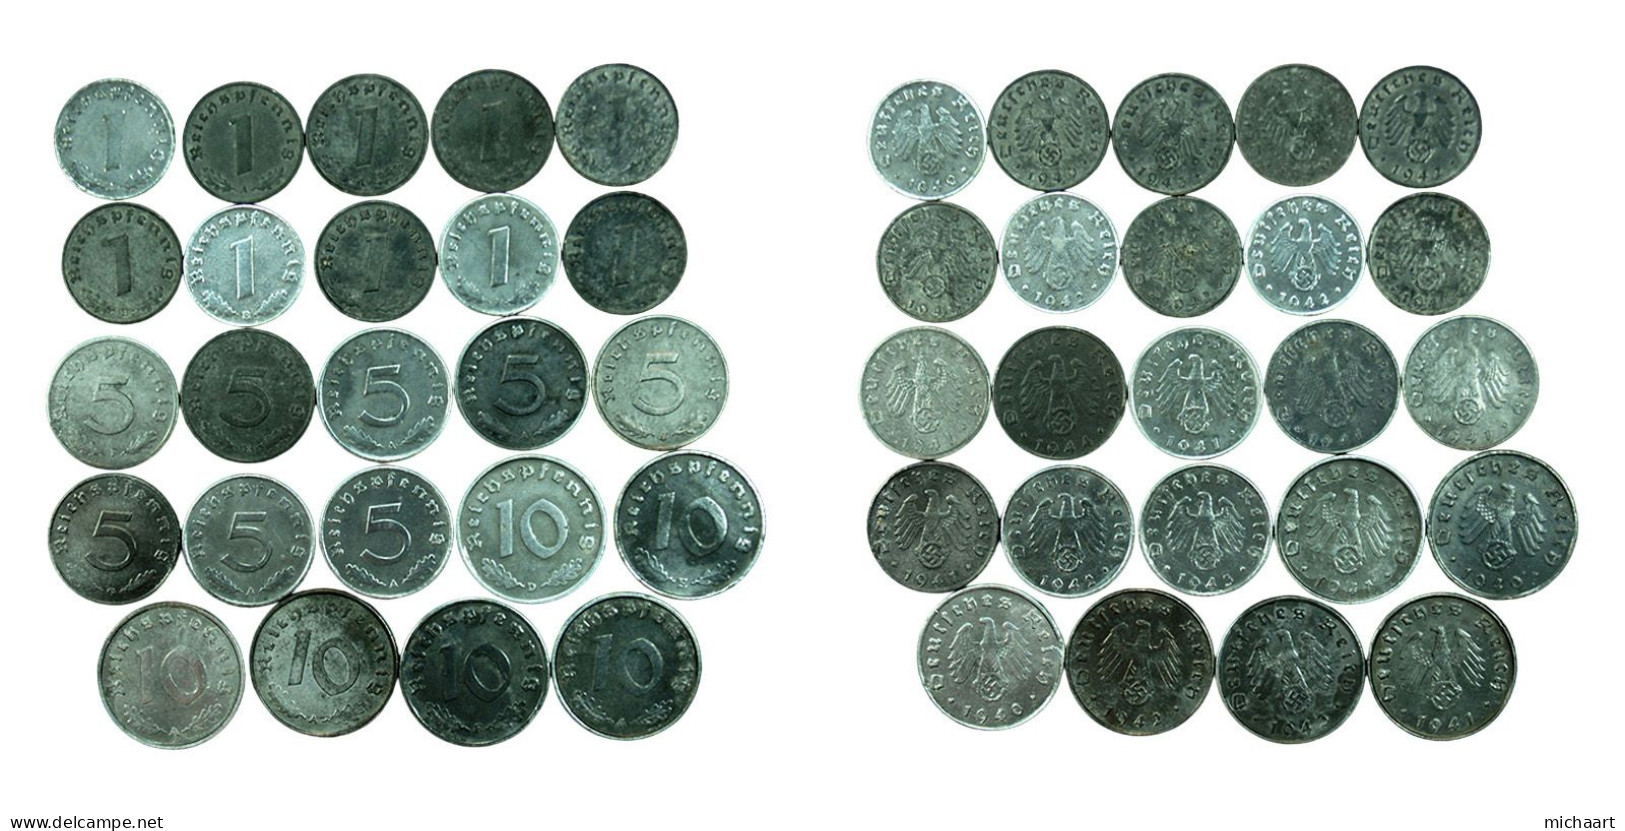 Third Reich Coins Lot Of 24 Coins 1 5 10 Pfennig 1940-1944 Germany 03745 - Colecciones Completas Y Lotes